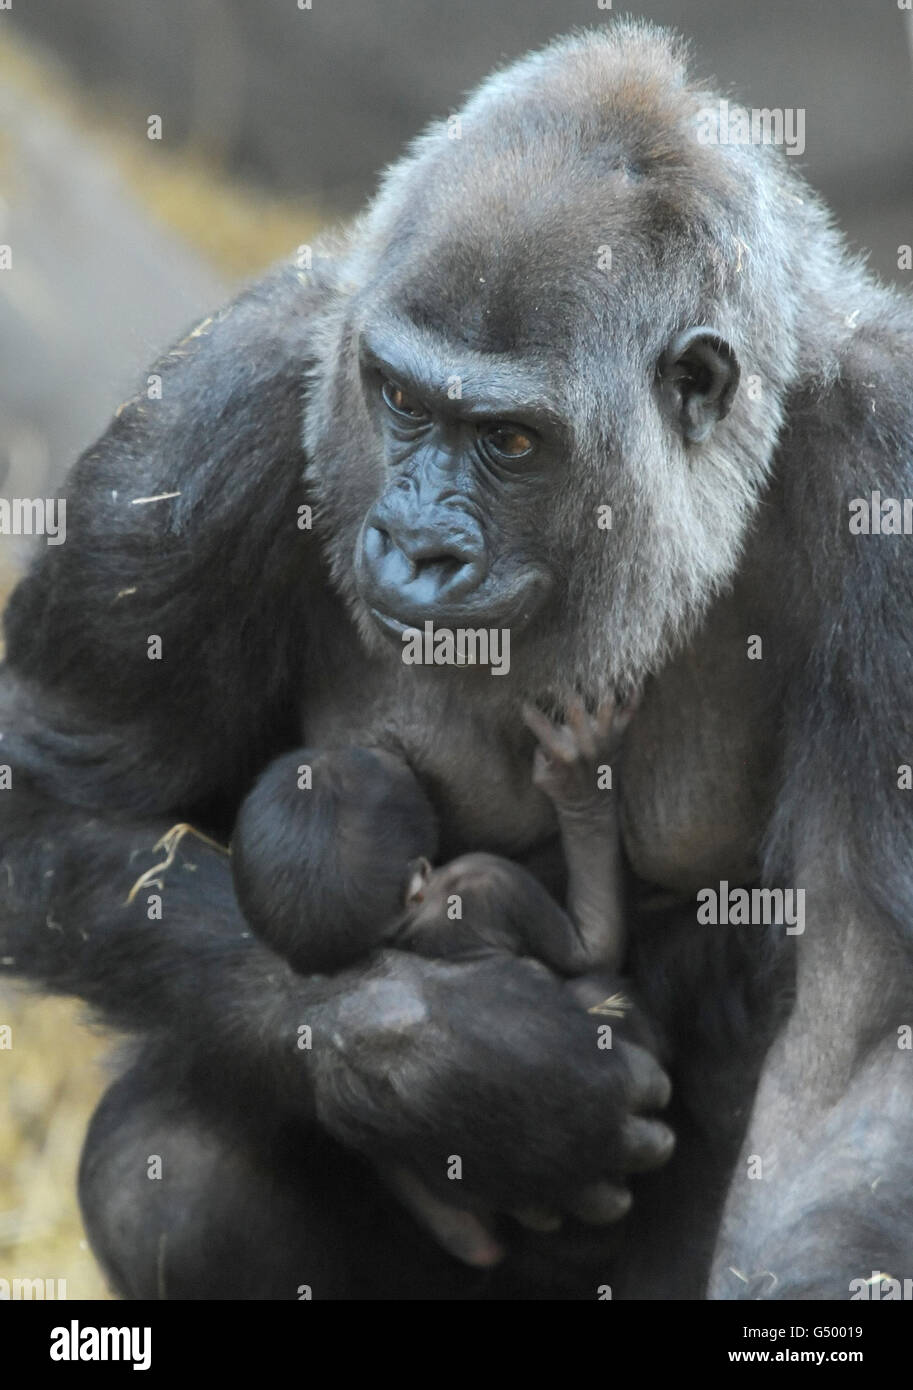 Asili, la gorila occidental de tierras bajas de 21 años, lleva a su recién nacido todavía sin nombre, que nació en Chessington World of Adventures en Surrey ayer. Foto de stock